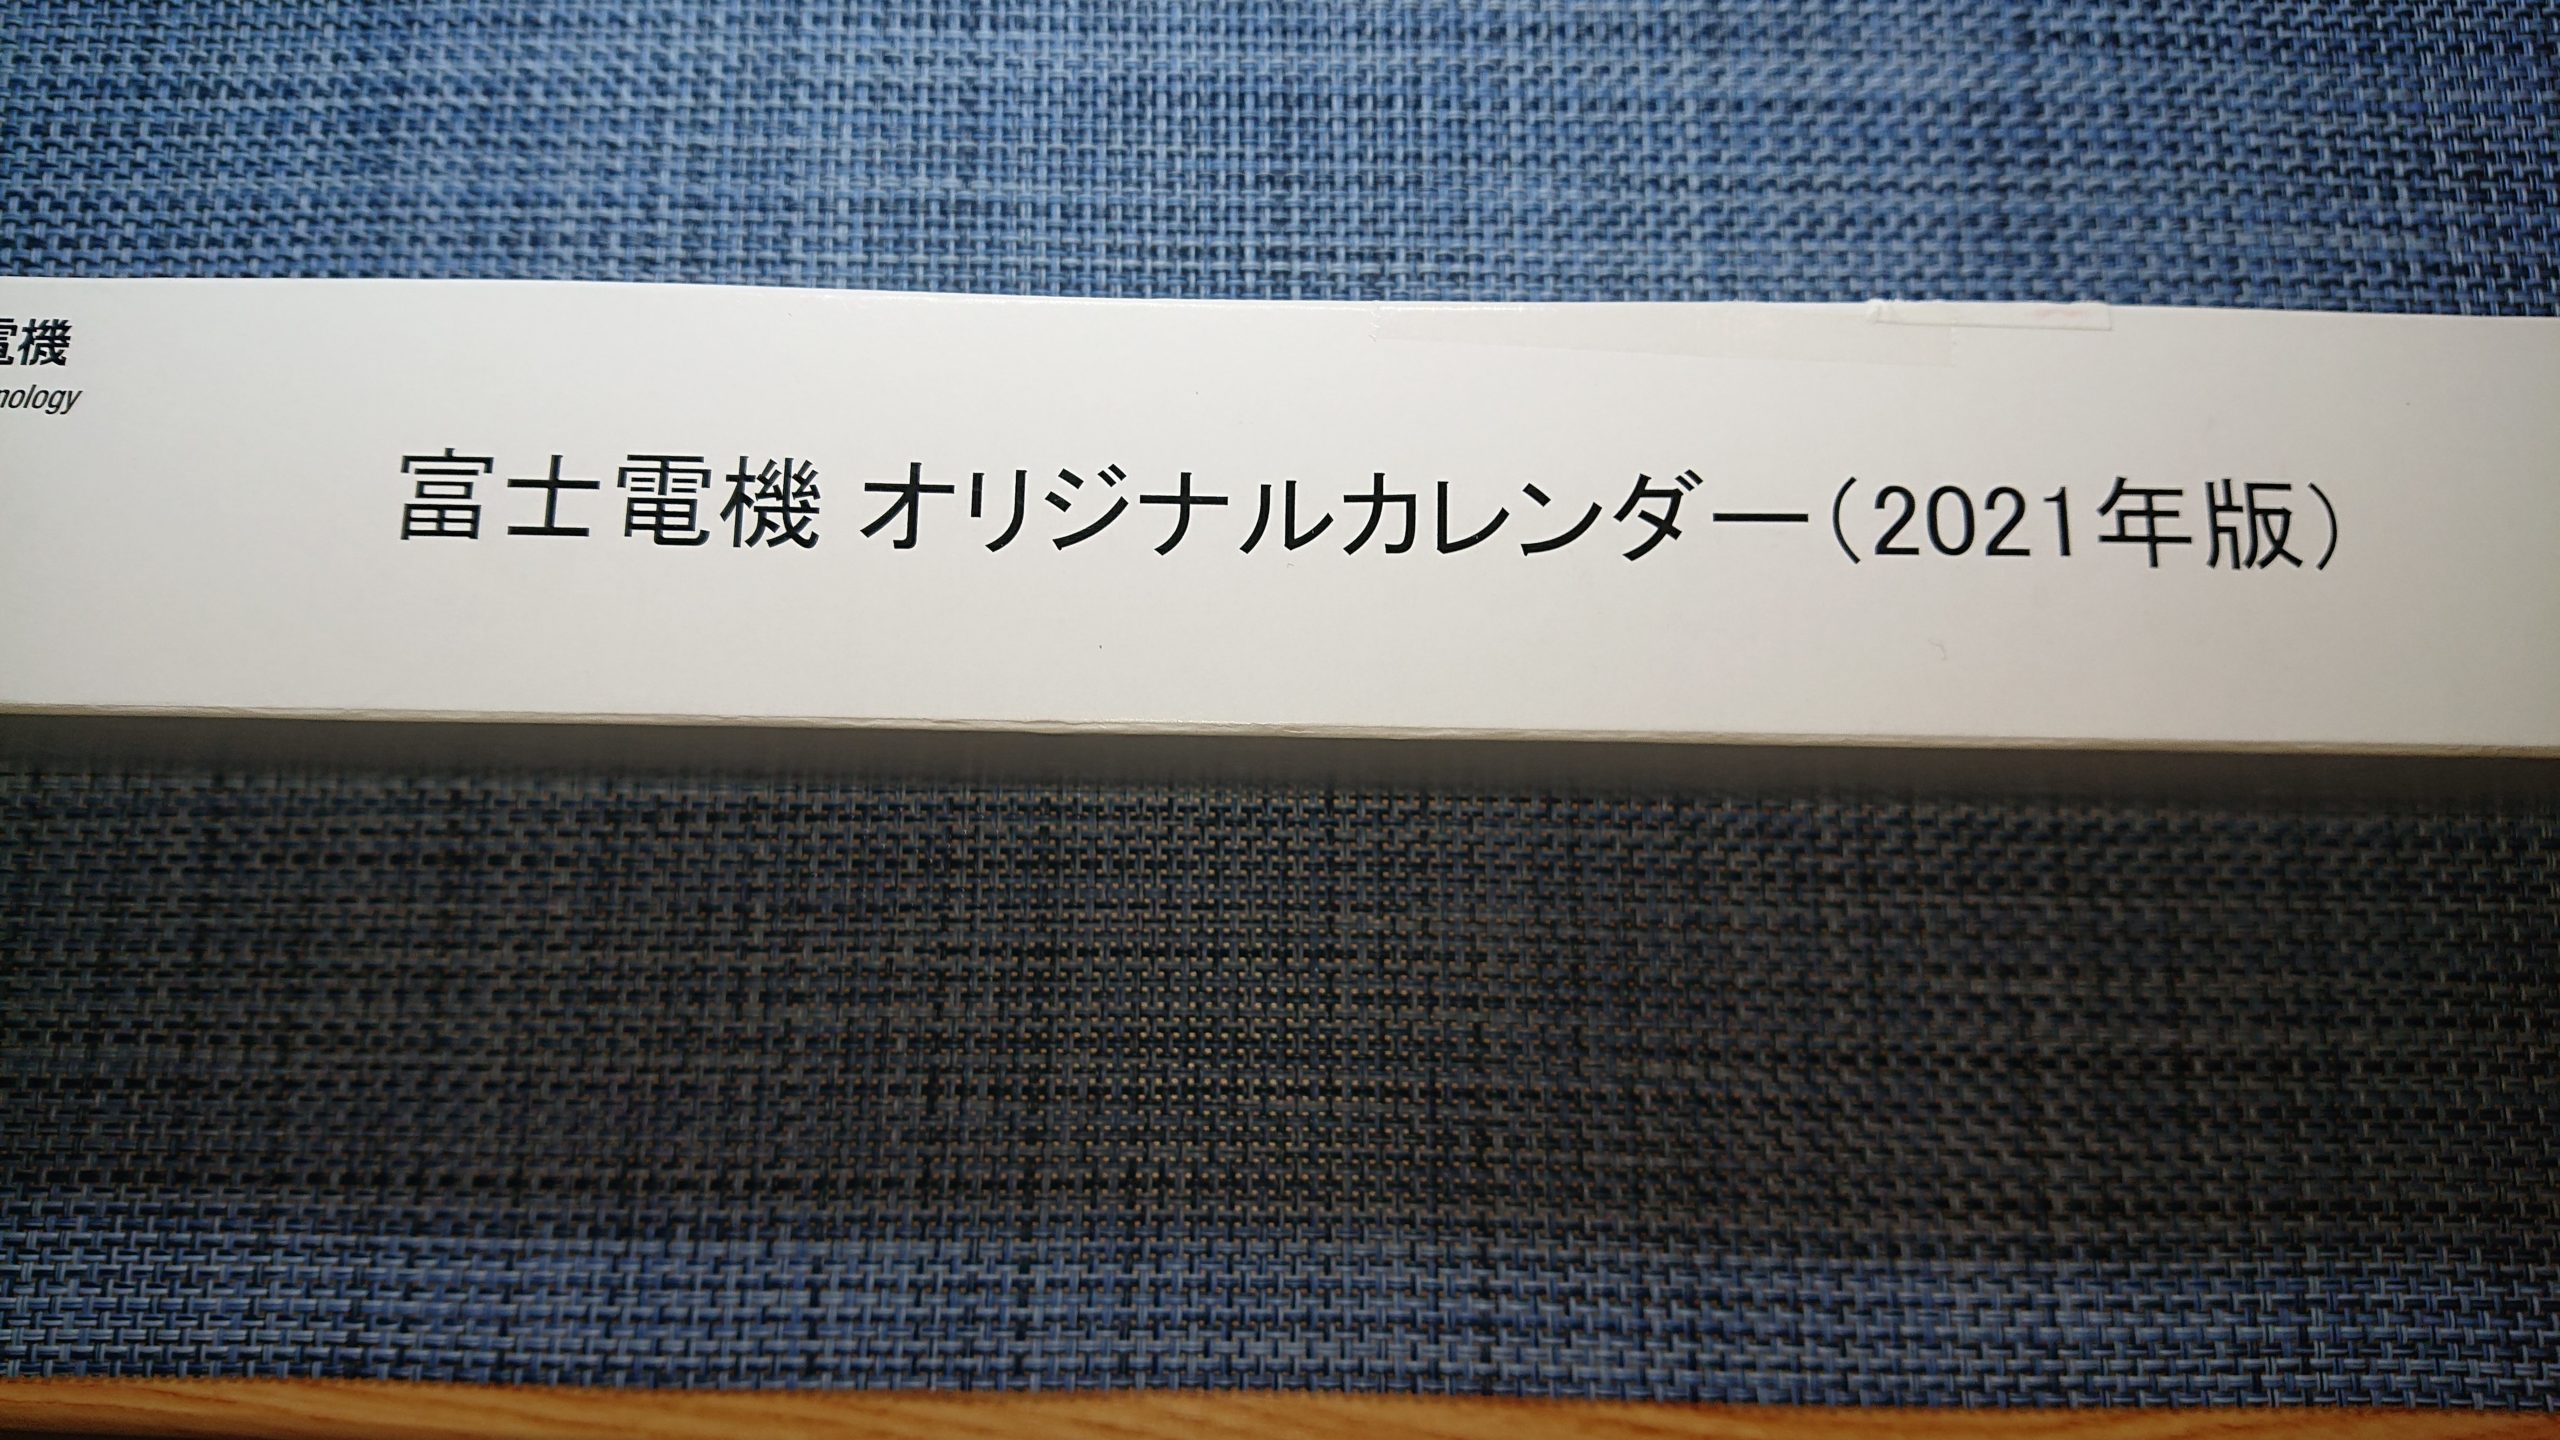 1株でOK！富士電機(6504)の株主優待のカレンダーが届きました 